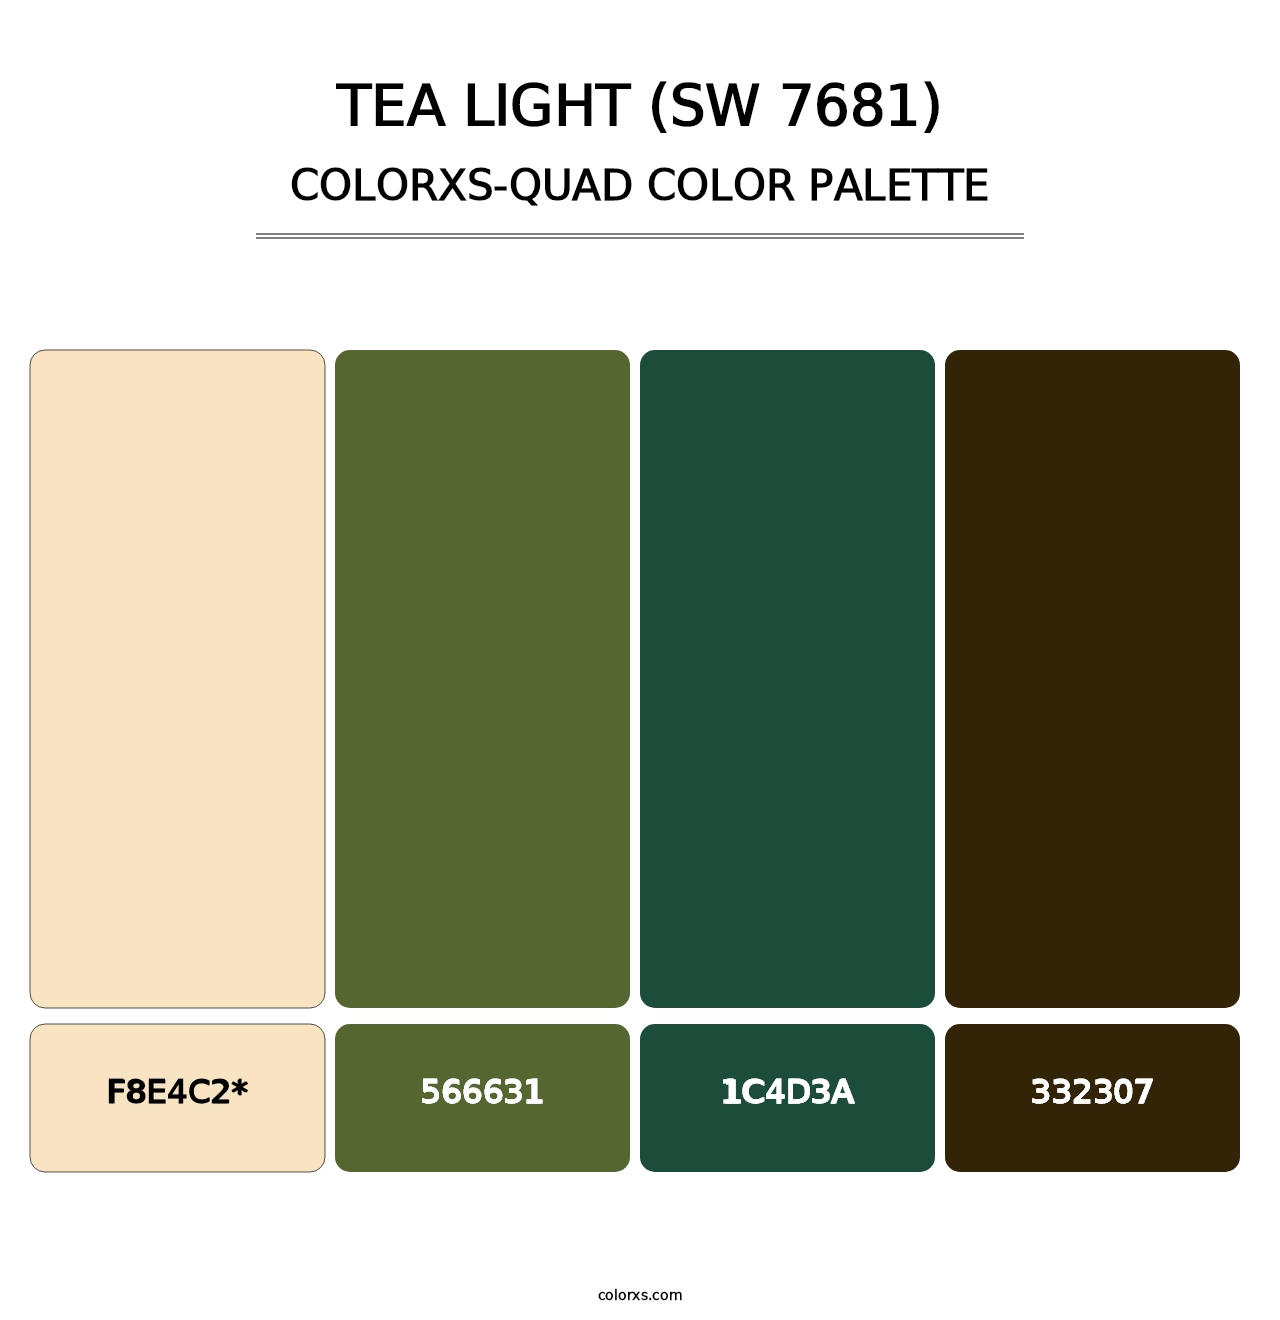 Tea Light (SW 7681) - Colorxs Quad Palette